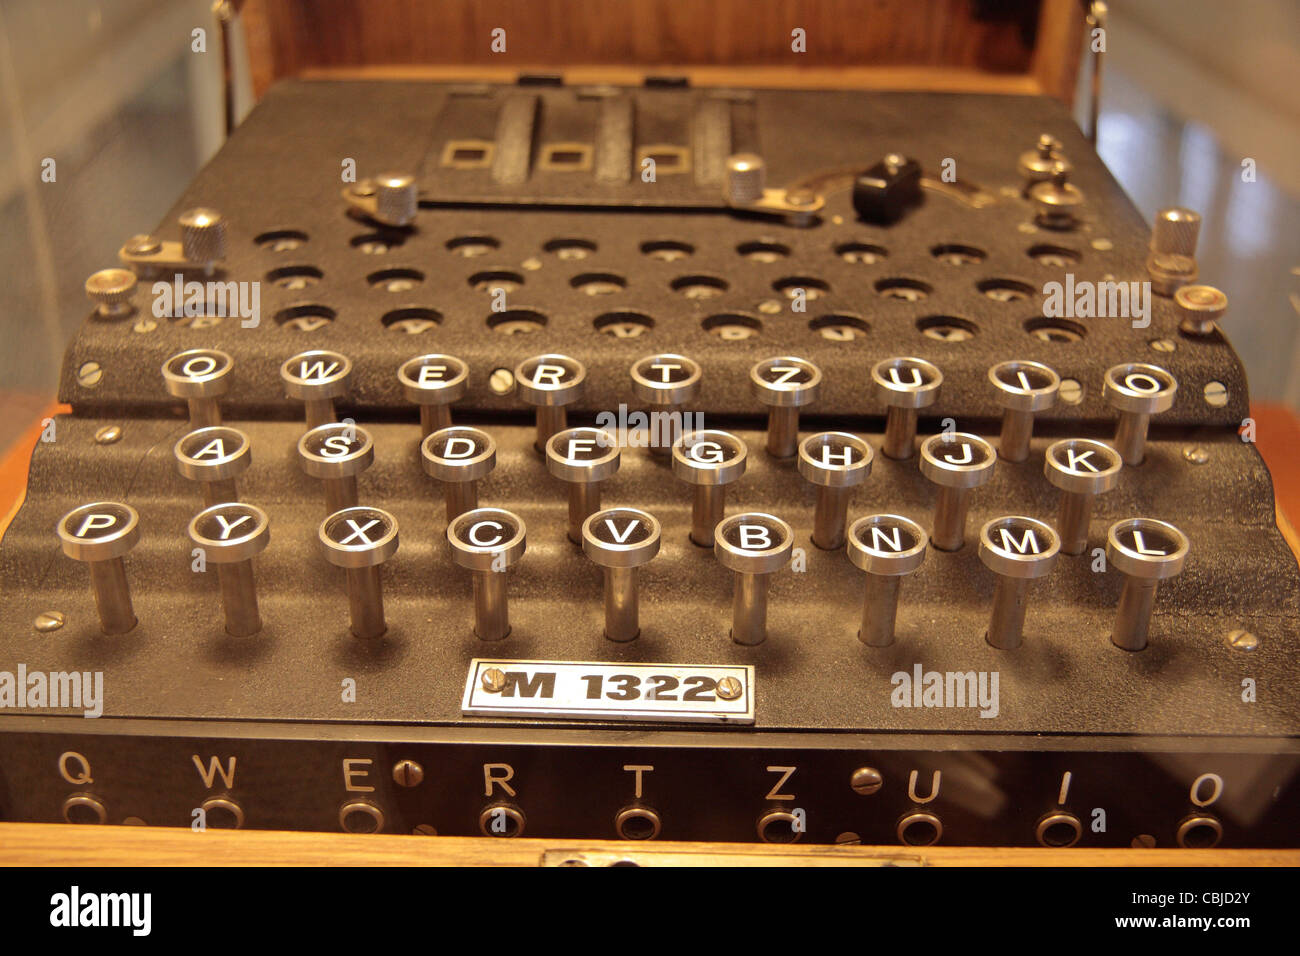 Niedrige Blick auf die Tastatur einer aufgenommenen Enigma-Maschine auf dem Display in Bletchley Park, Bletchley. Buckinghamshire, Großbritannien. Stockfoto